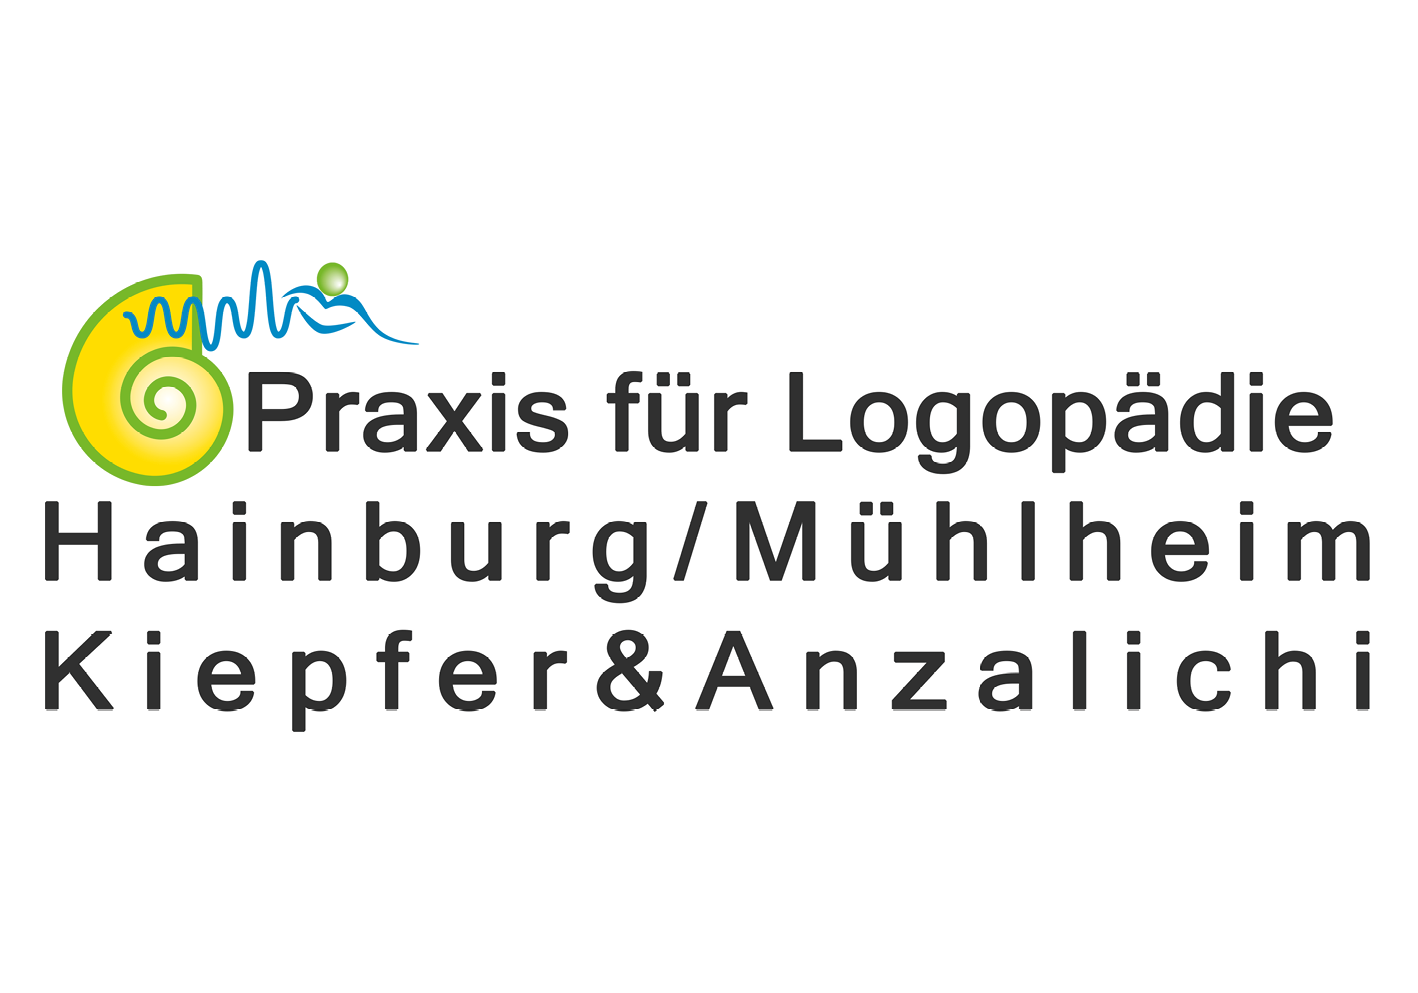 Praxis für Logopädie Hainburg und Mühlheim - Kiepfer & Anzalichi